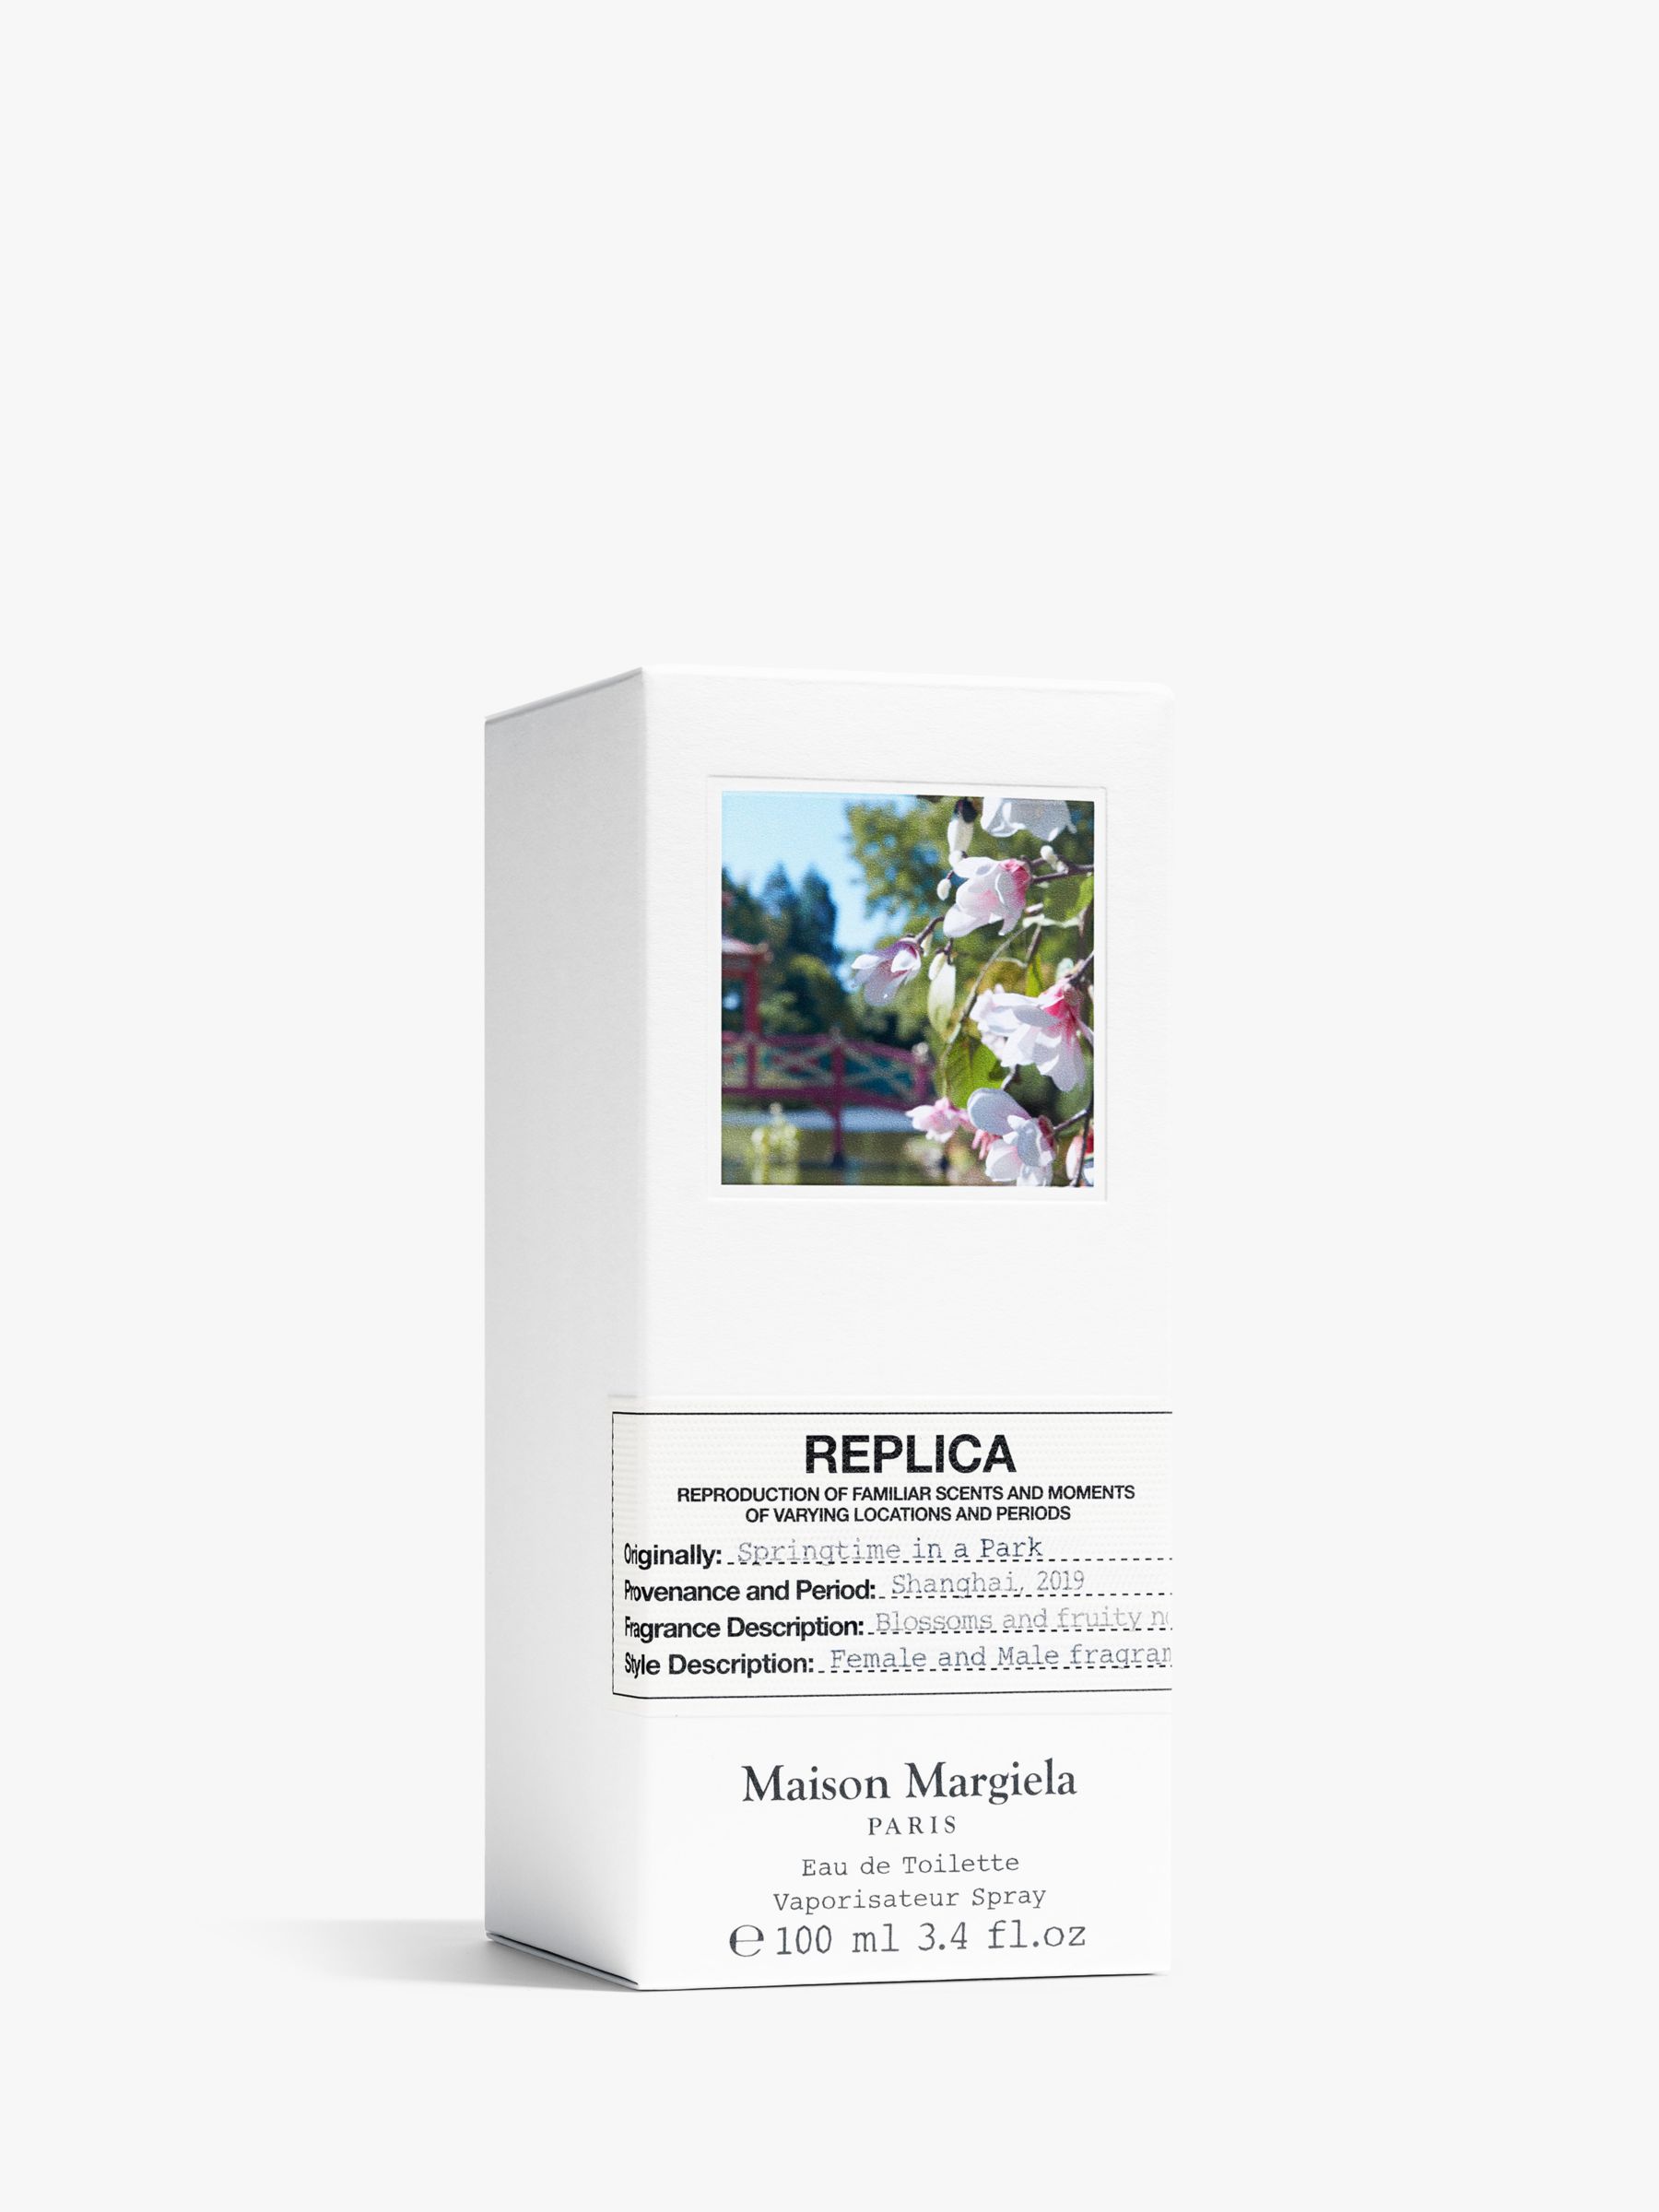 Maison Margiela Replica Springtime in a Park Eau de Toilette, 100ml 2